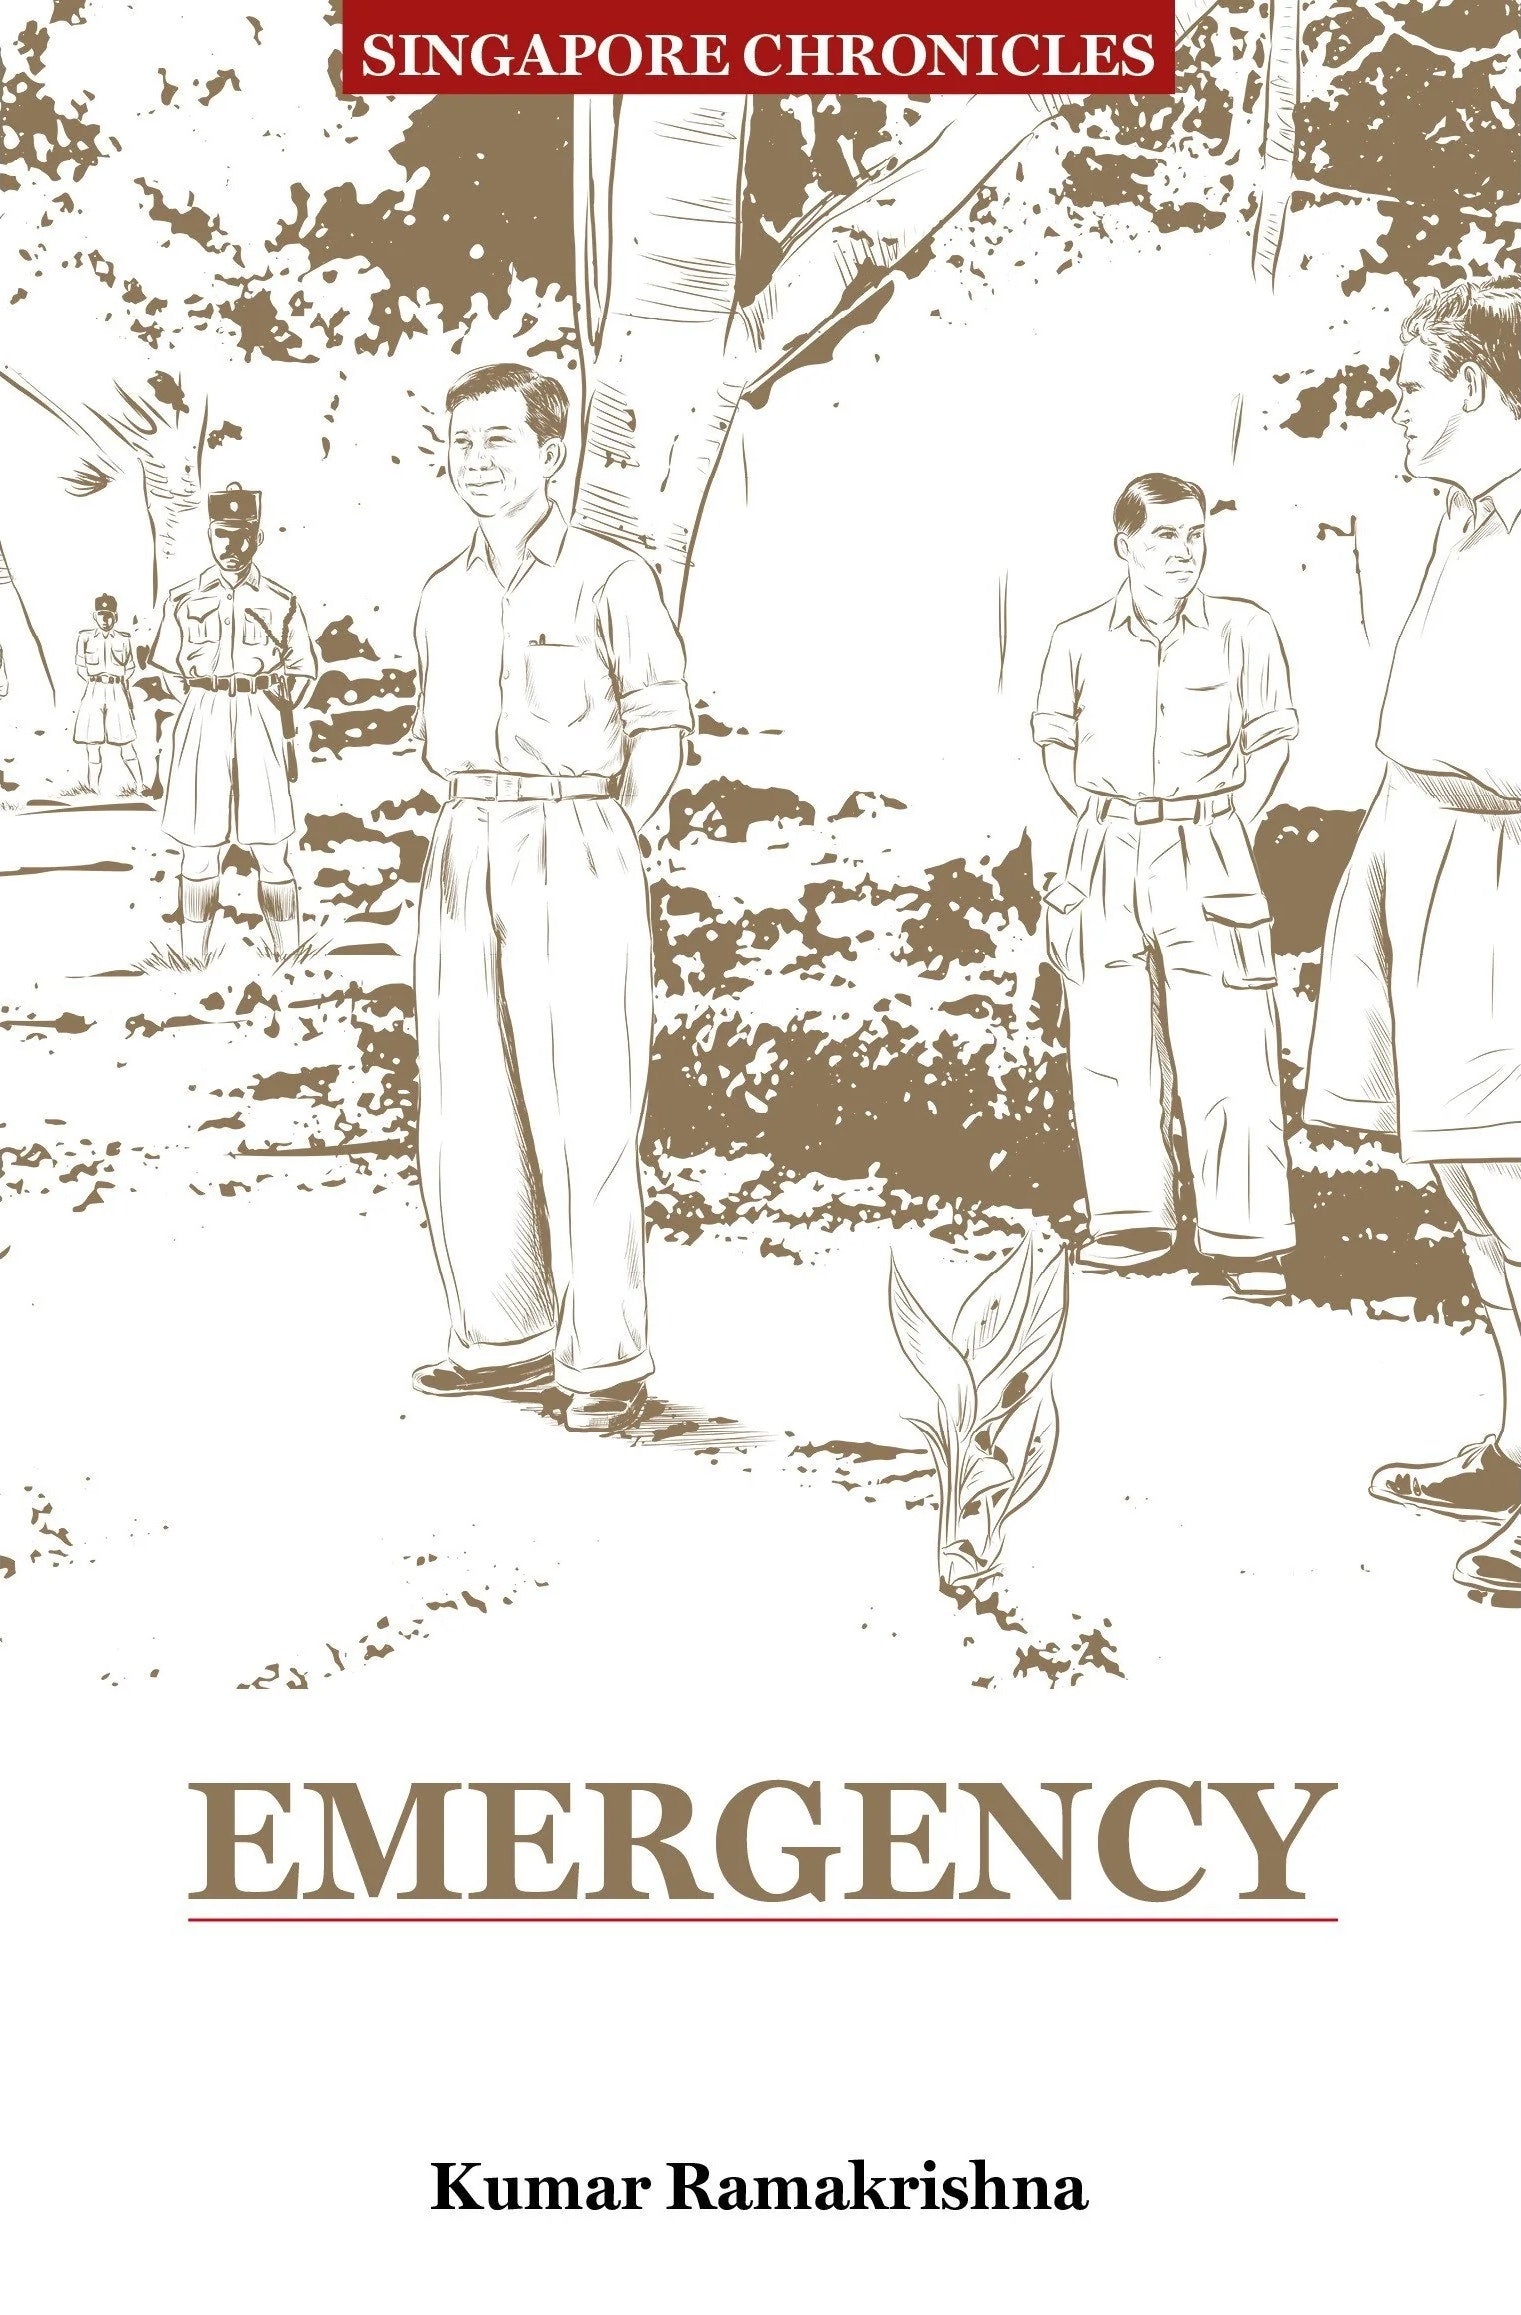 Singapore Chronicles: Emergency